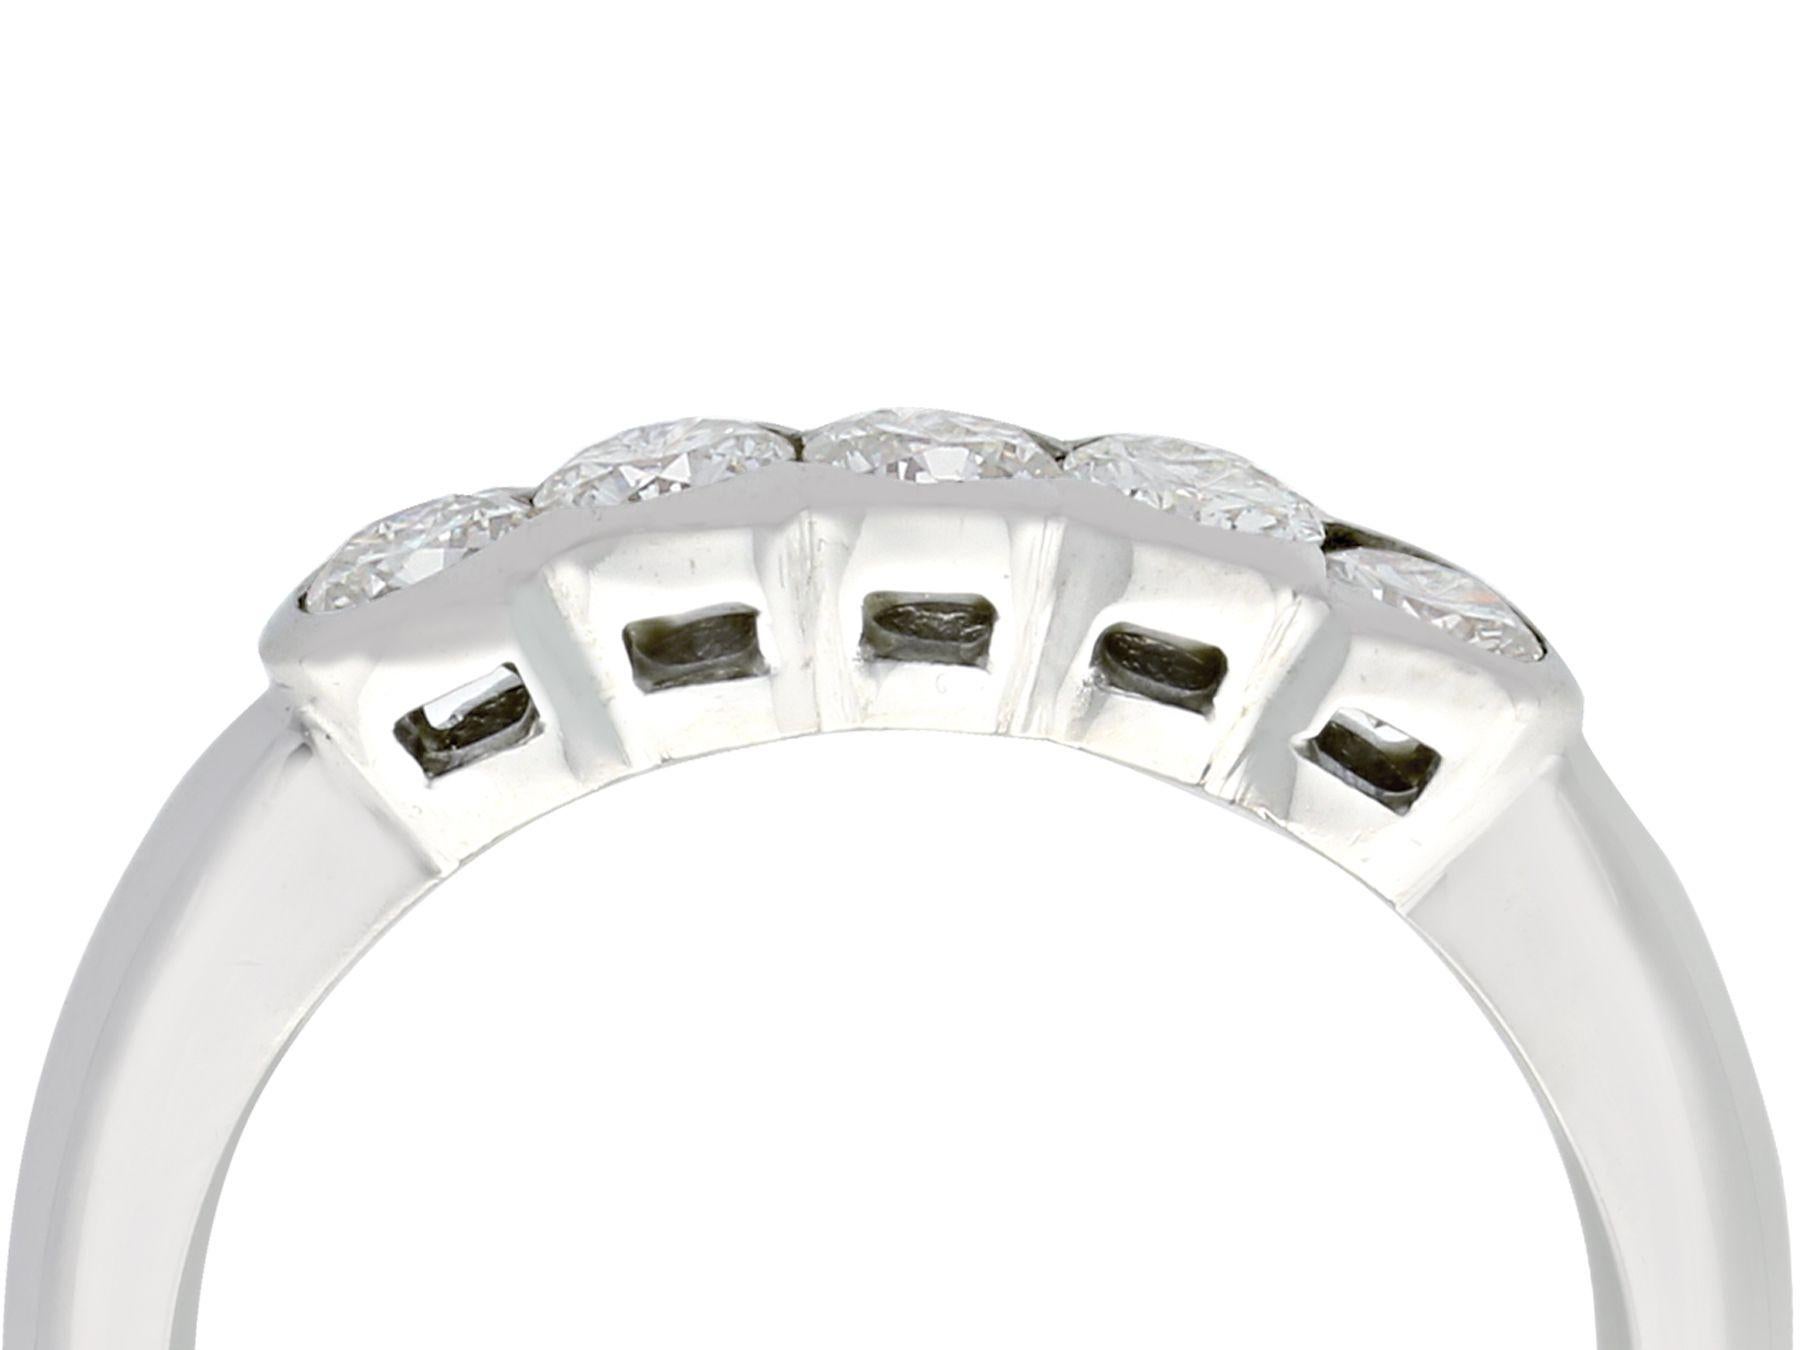 Ein feiner und beeindruckender zeitgenössischer Ring aus 0,95 Karat Diamanten und 18 Karat Weißgold mit fünf Steinen; Teil unserer Kollektionen für zeitgenössischen Schmuck und Nachlassschmuck.

Dieser beeindruckende Ring mit mehreren Diamanten ist